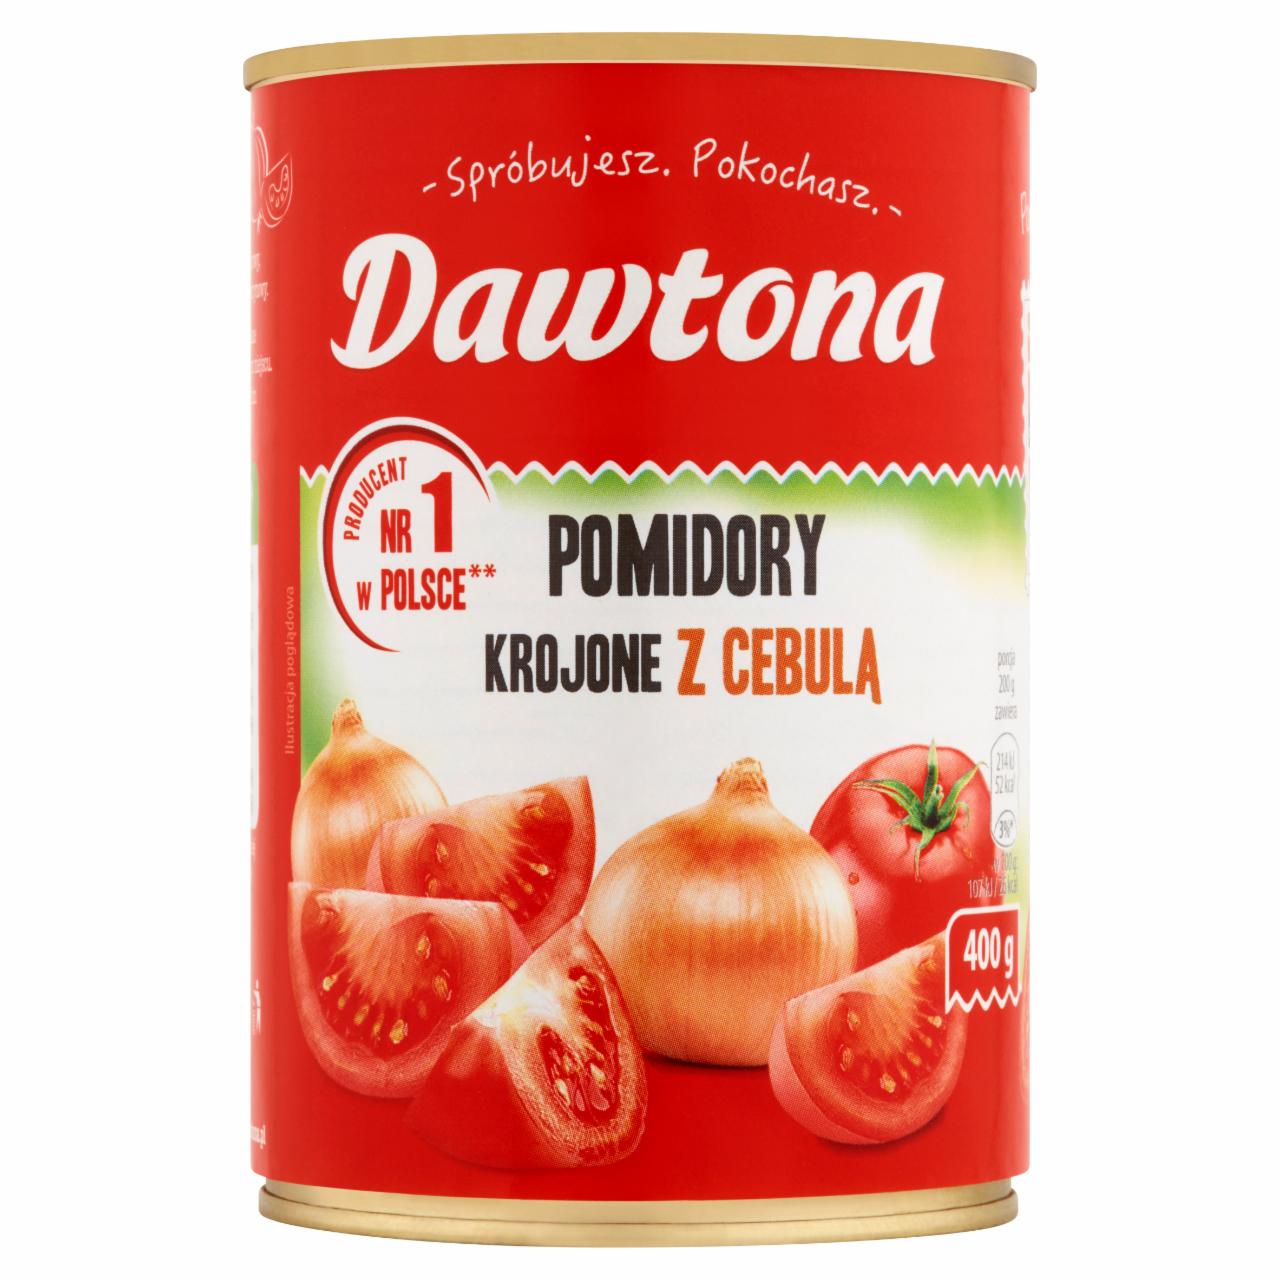 Zdjęcia - Dawtona Pomidory krojone z cebulą 400 g